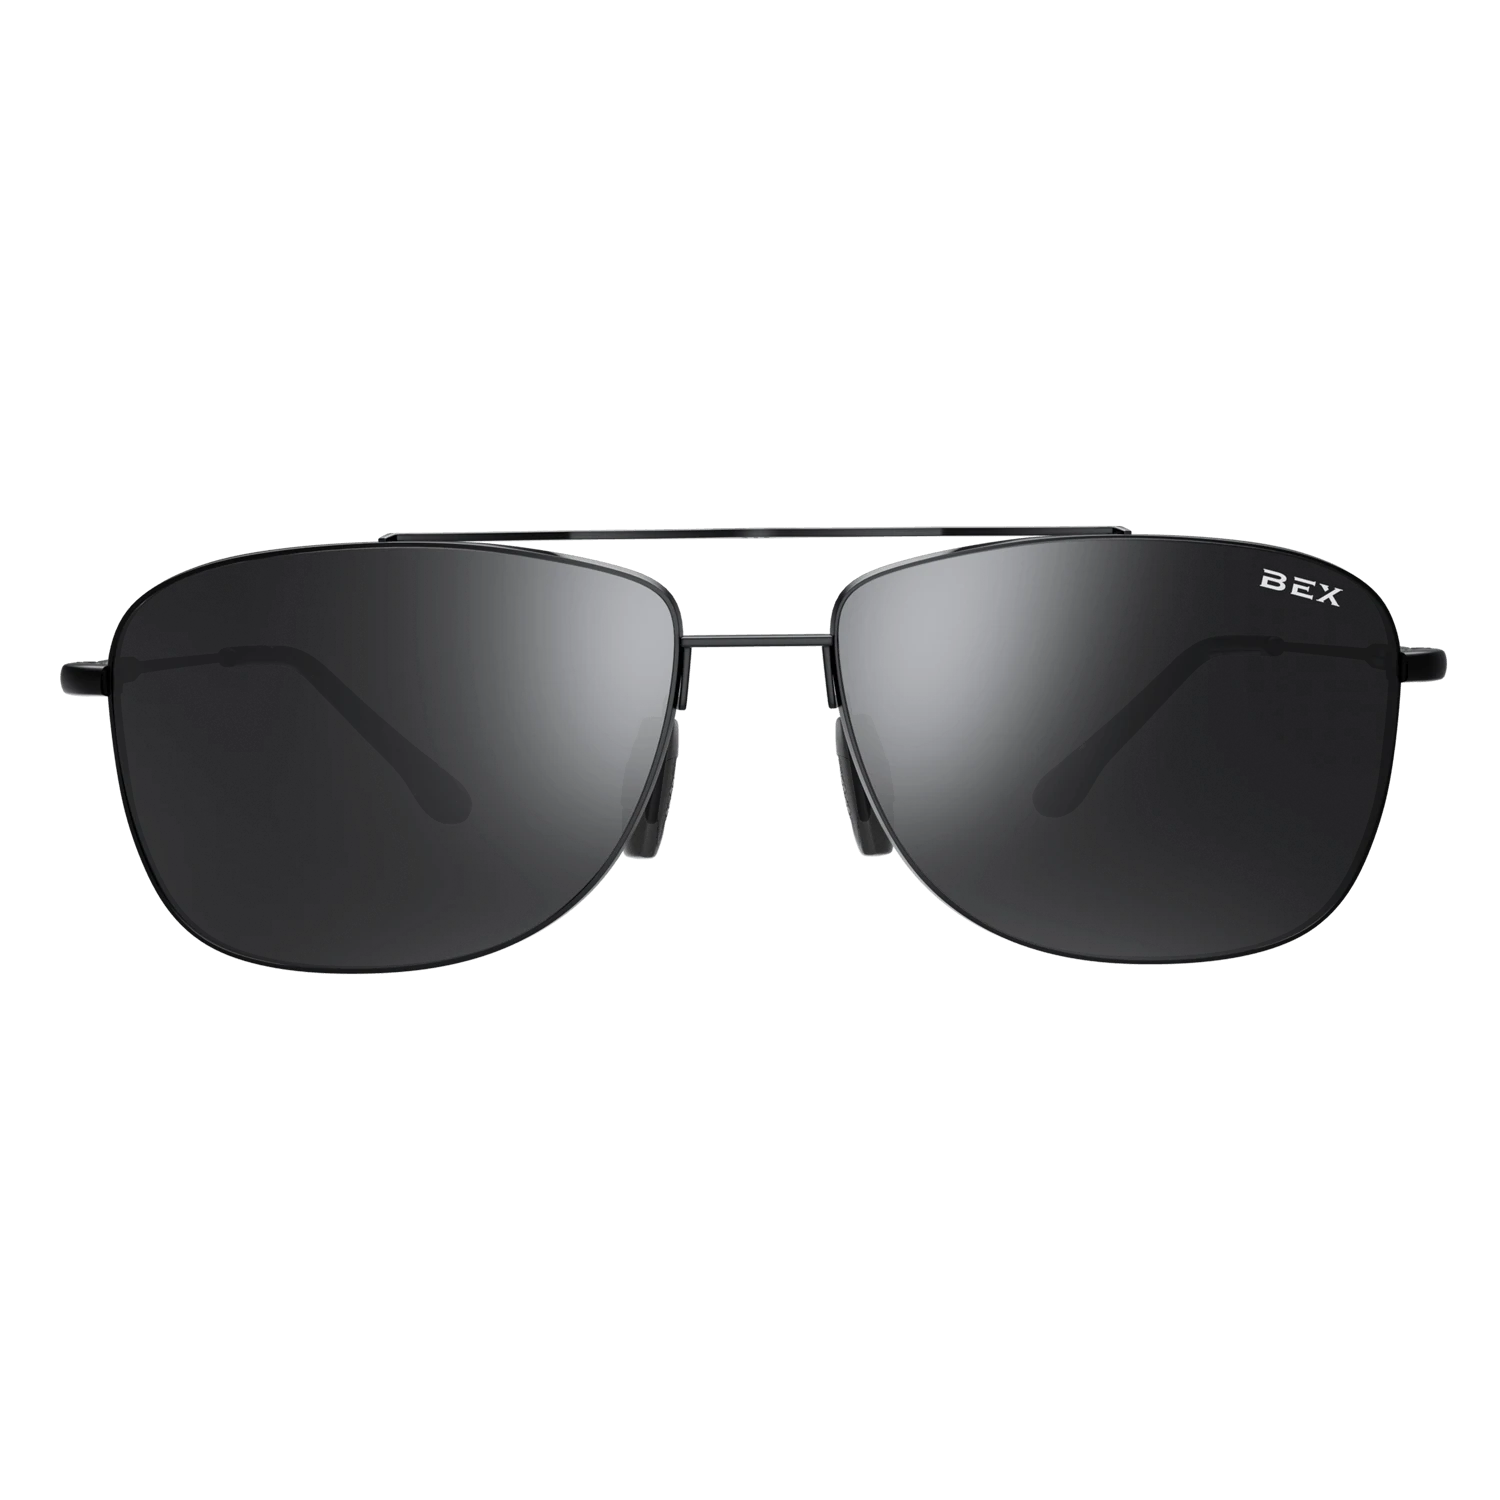 DRAEKLYN Black/Gray Sunglasses